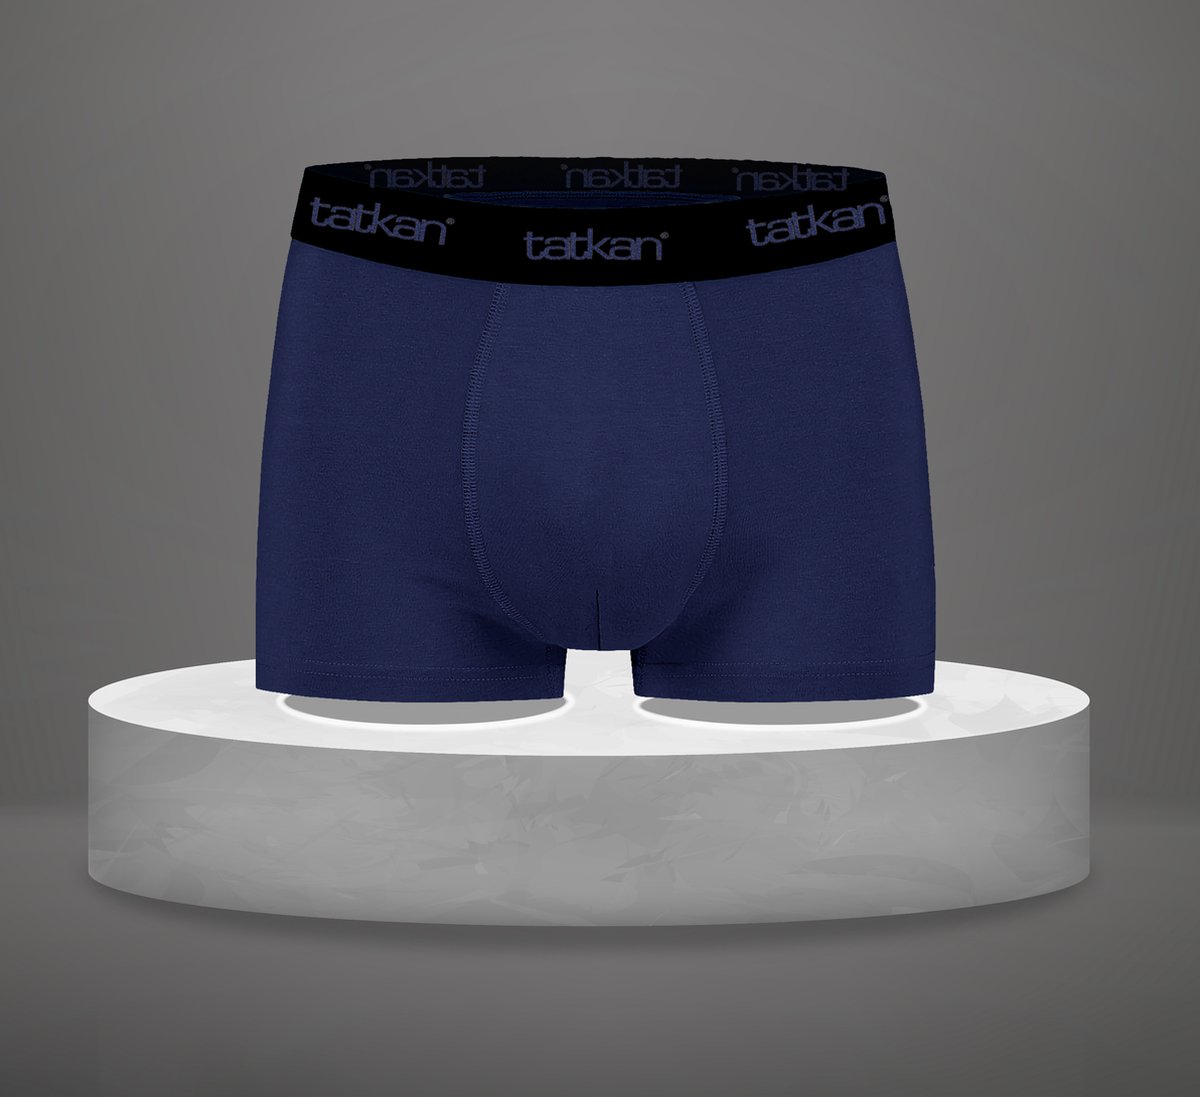 Tatkan - Underwear Heren Boxershorts - Modal Heren Ondergoed - Modal Boxershorts voor Mannen - Heren Onderbroeken - Normale pijp - Maat XL - 4-pack - 2 Zwart, 2 Marine